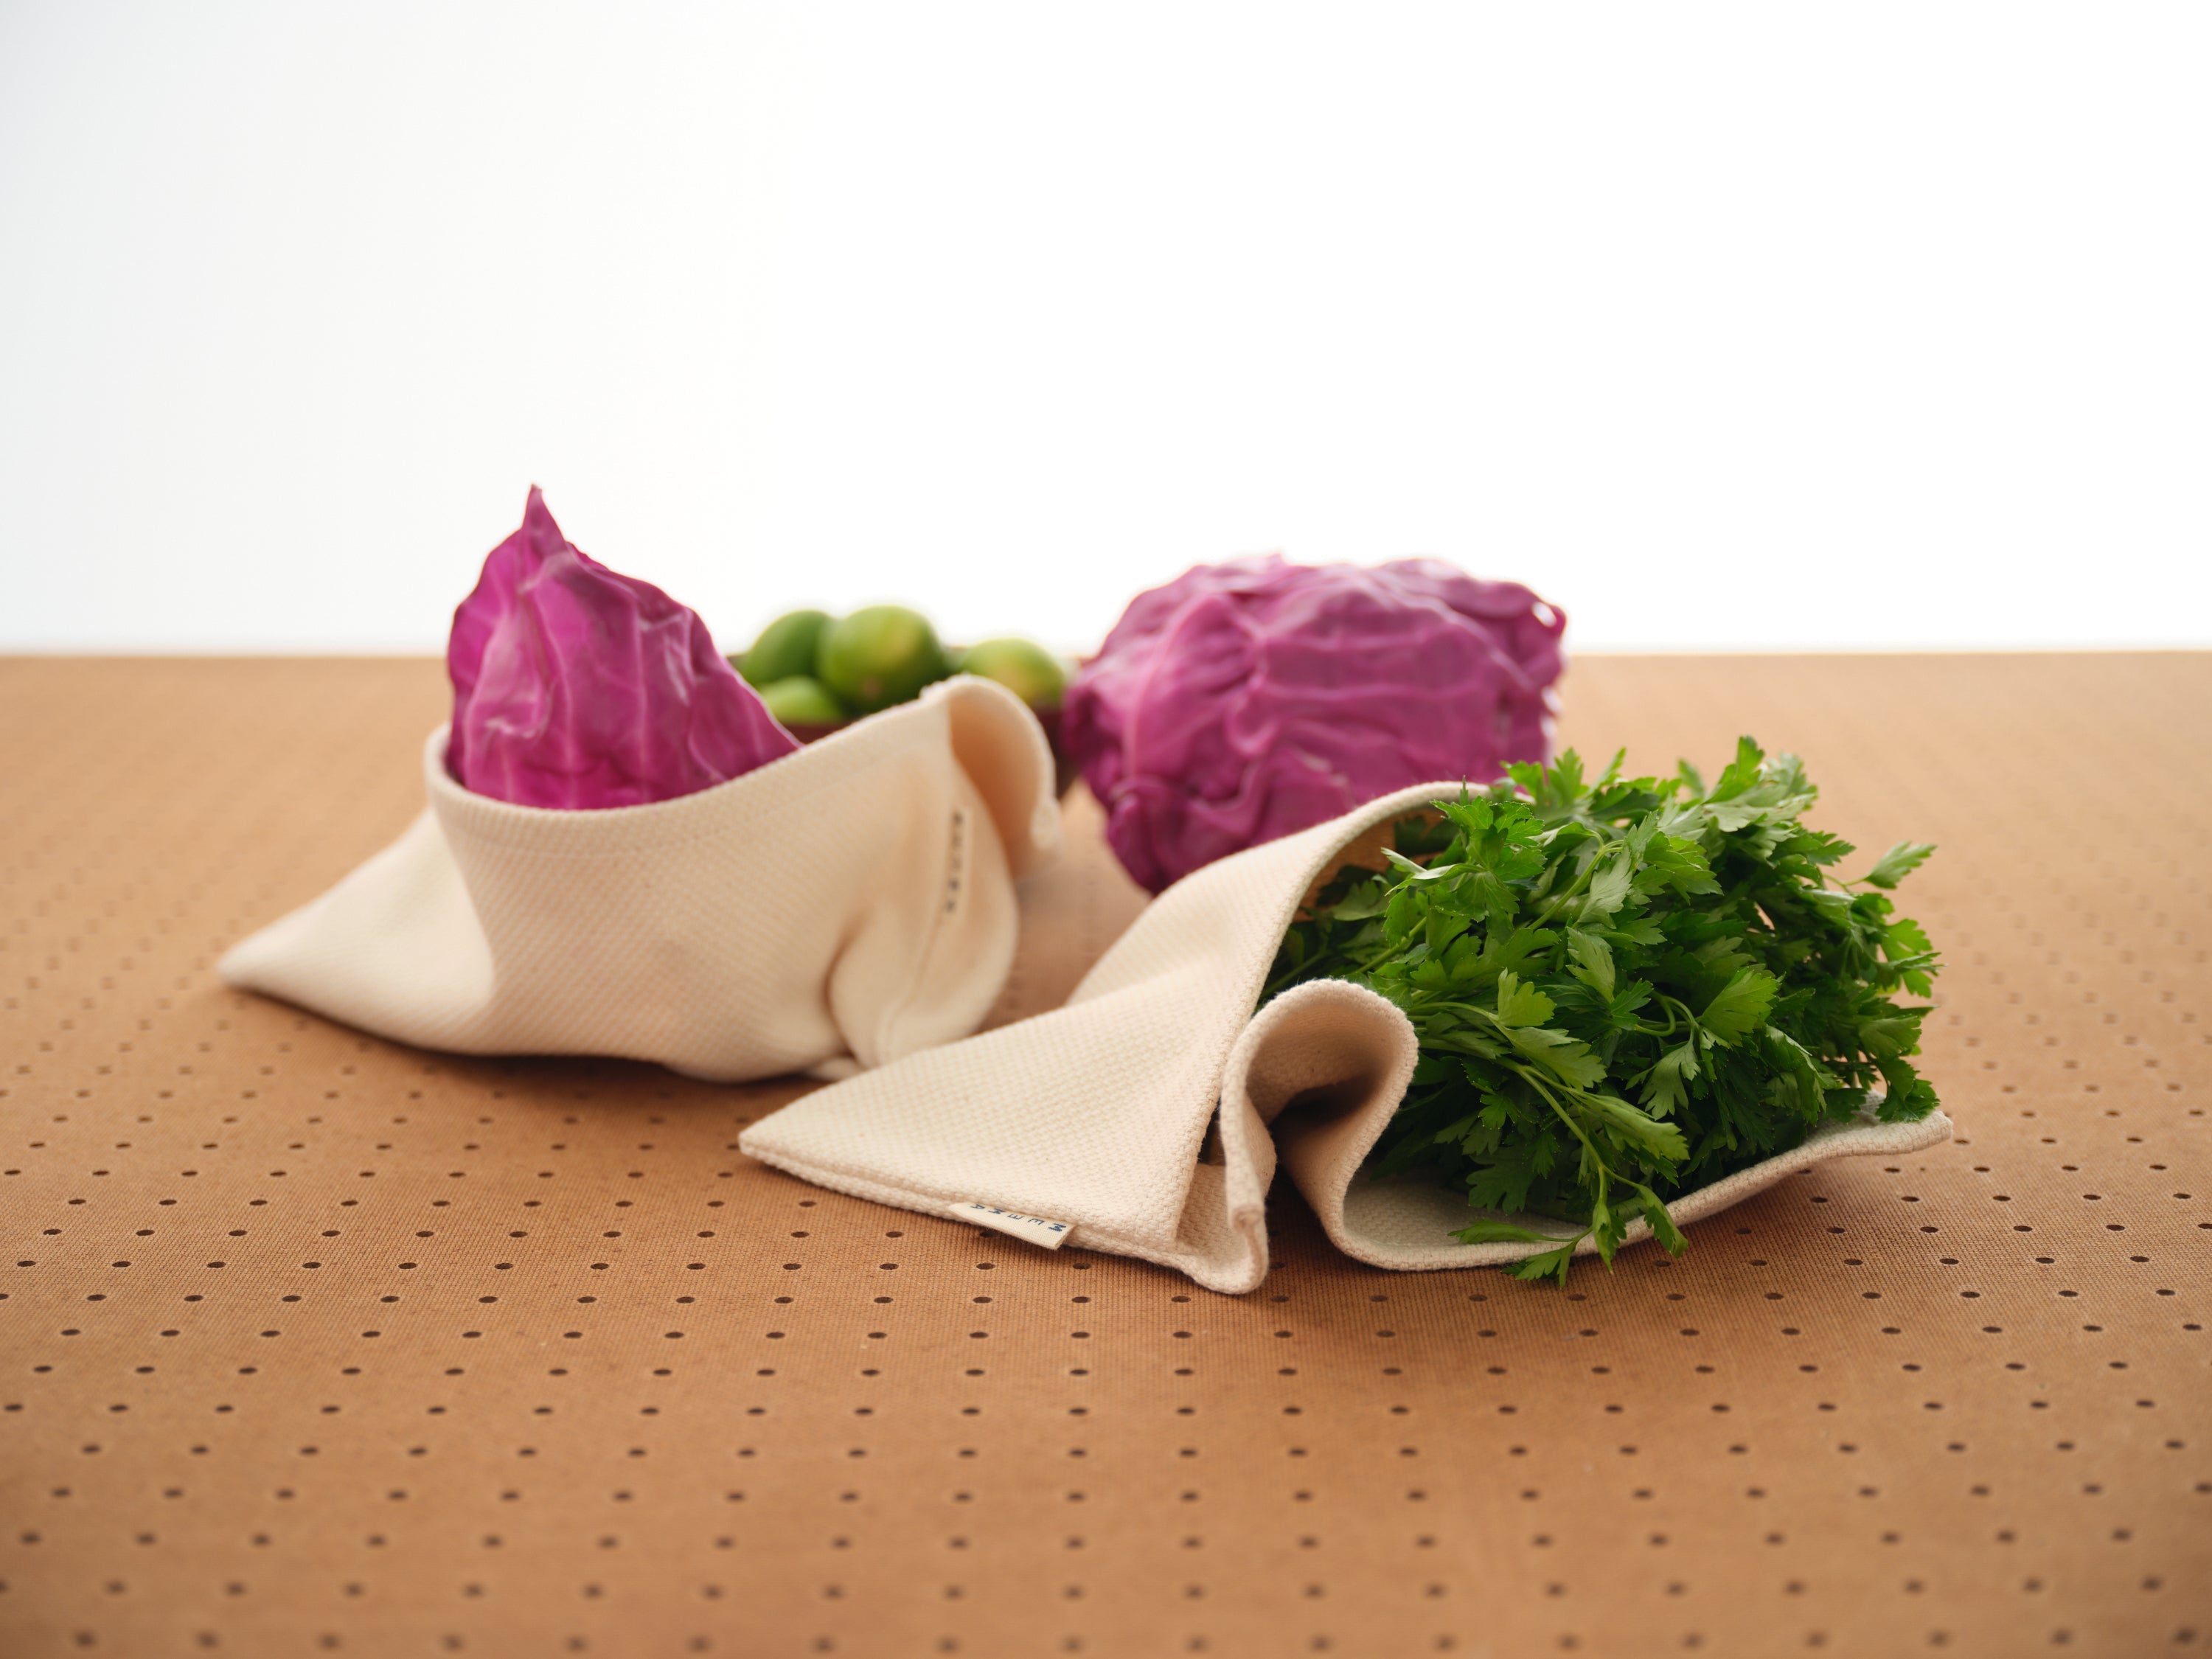 Vegetable Crisper Bags by MEEMA